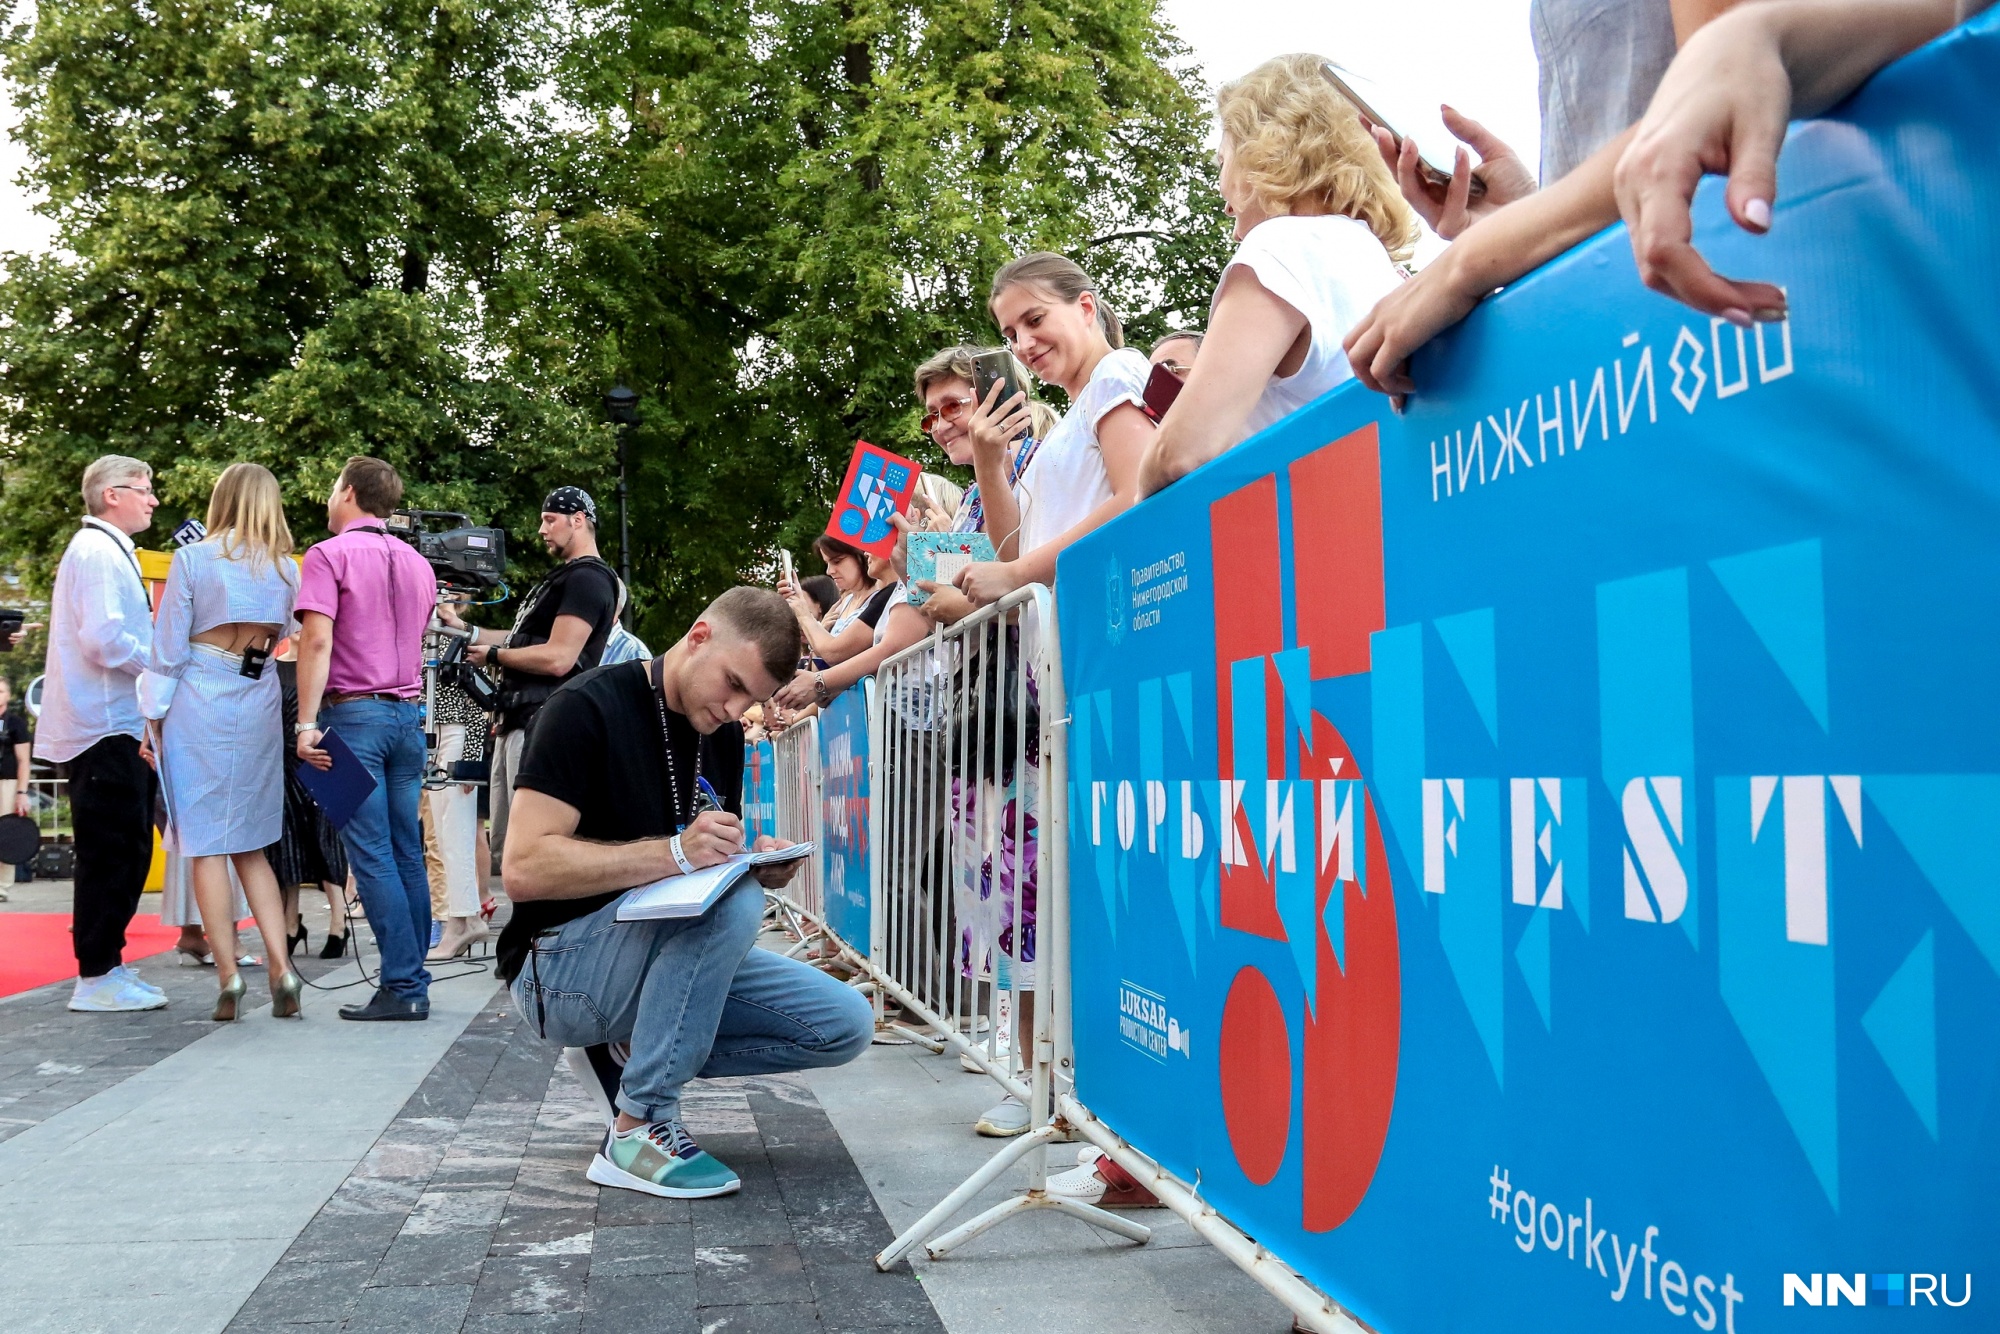 Tesla Boy, DJ-вечеринки и открытие «Горький Fest». Программа мероприятий на 9 и 10 июля в Нижнем Новгороде